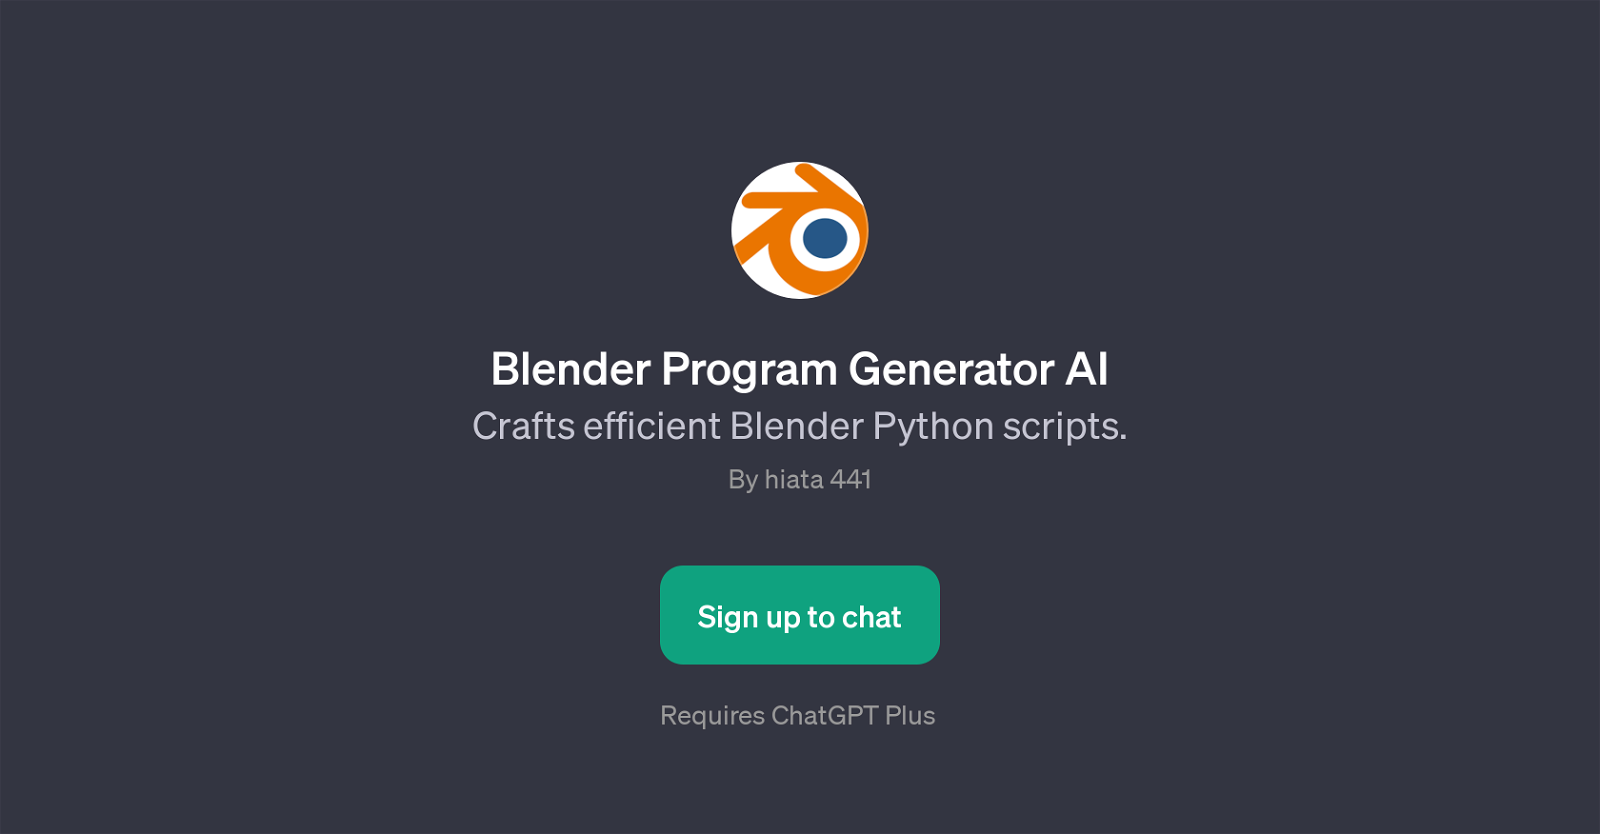 Blender Program Generator AI website